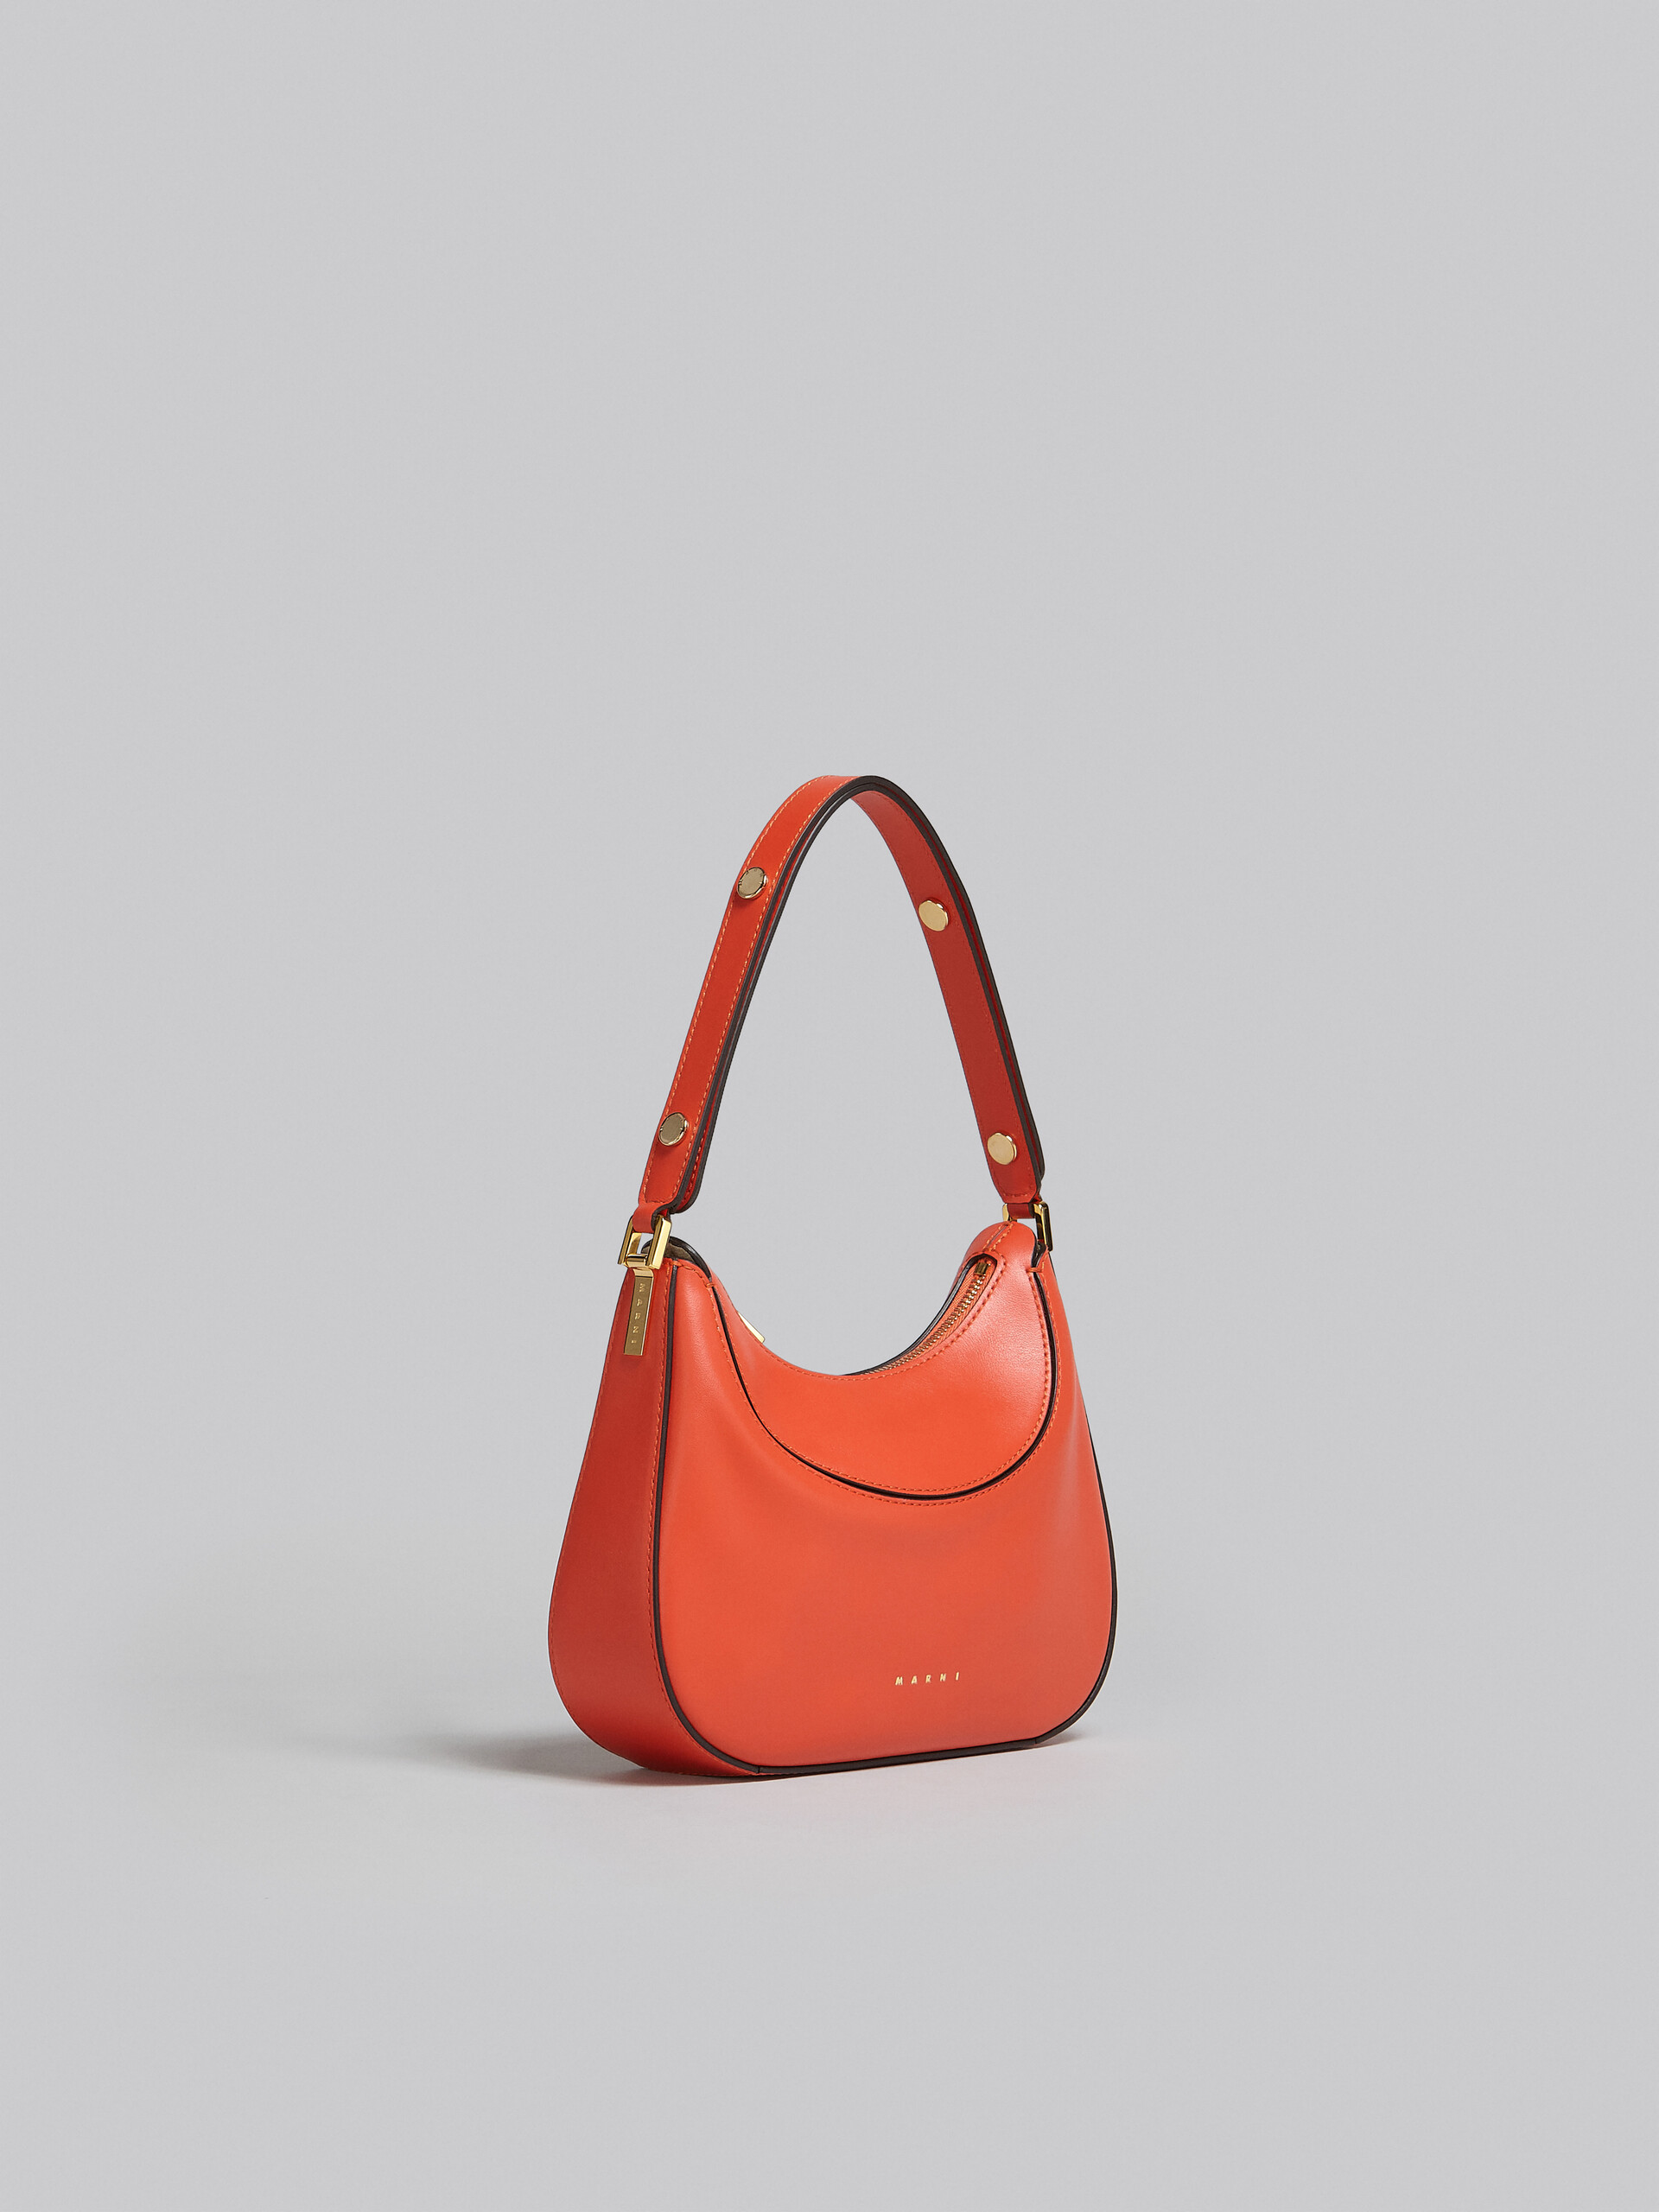 Milano Mini Bag in orange leather - Handbag - Image 6